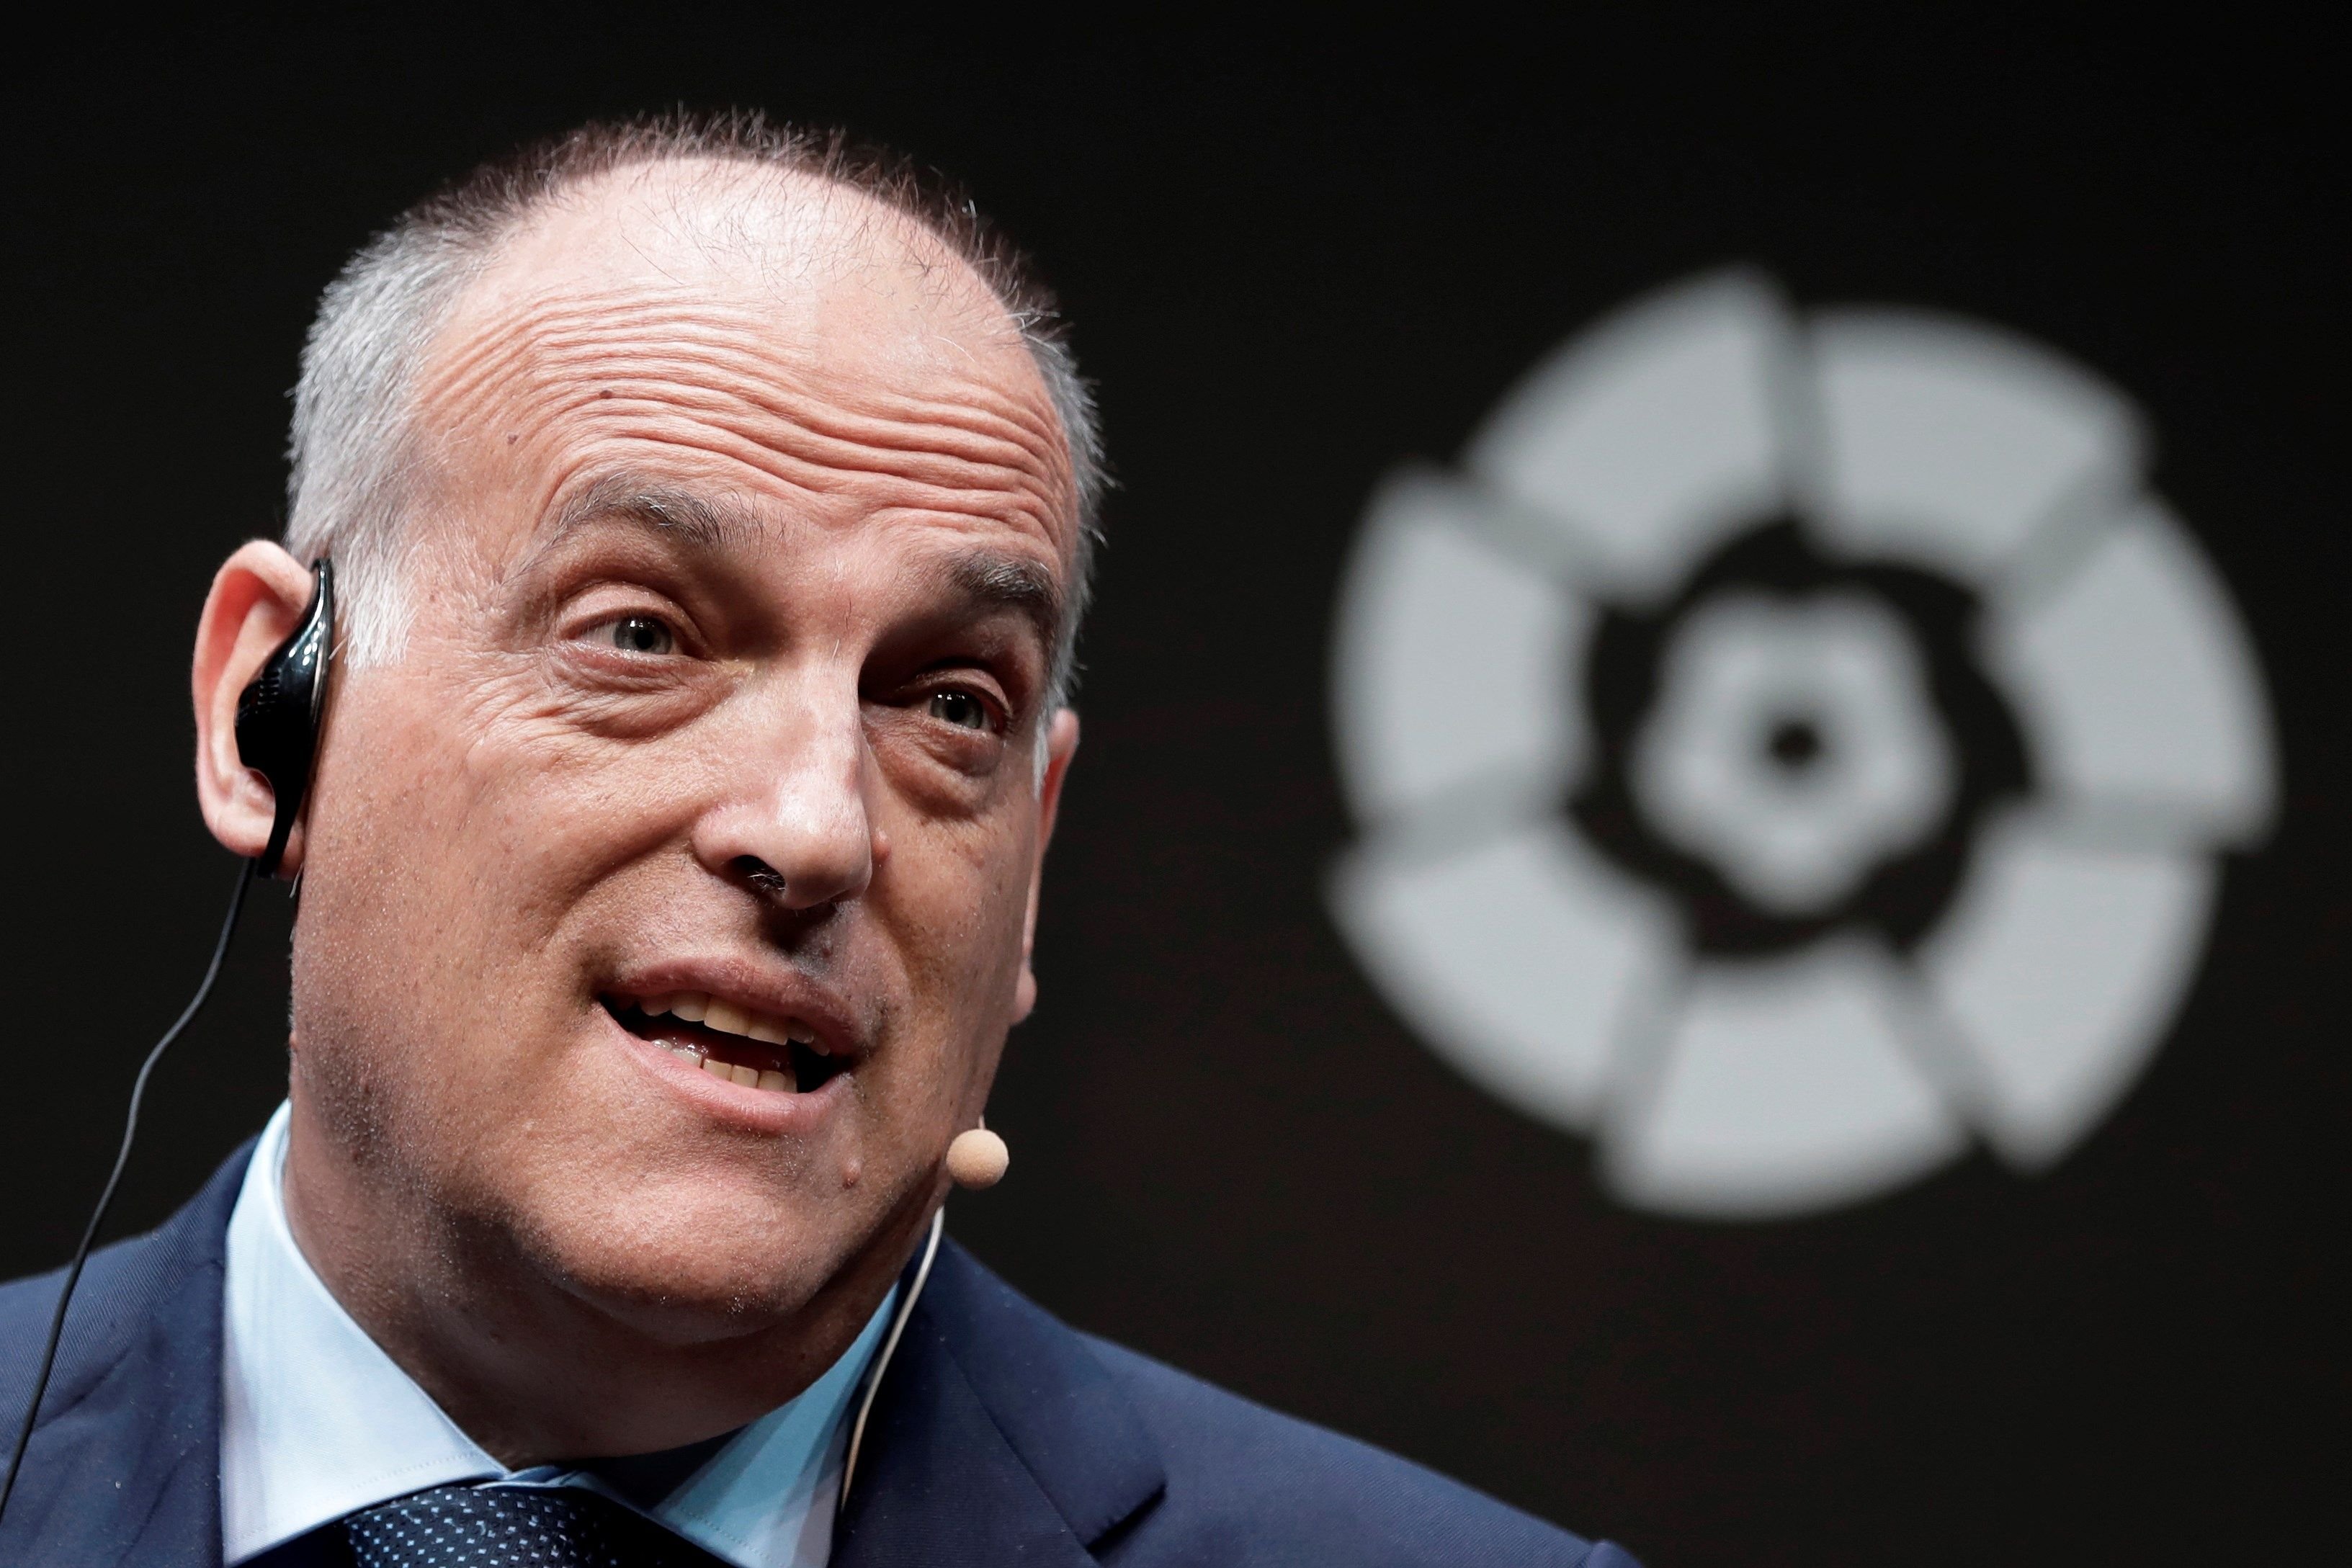 La Superlliga remou els fonaments del futbol europeu: allau de reaccions